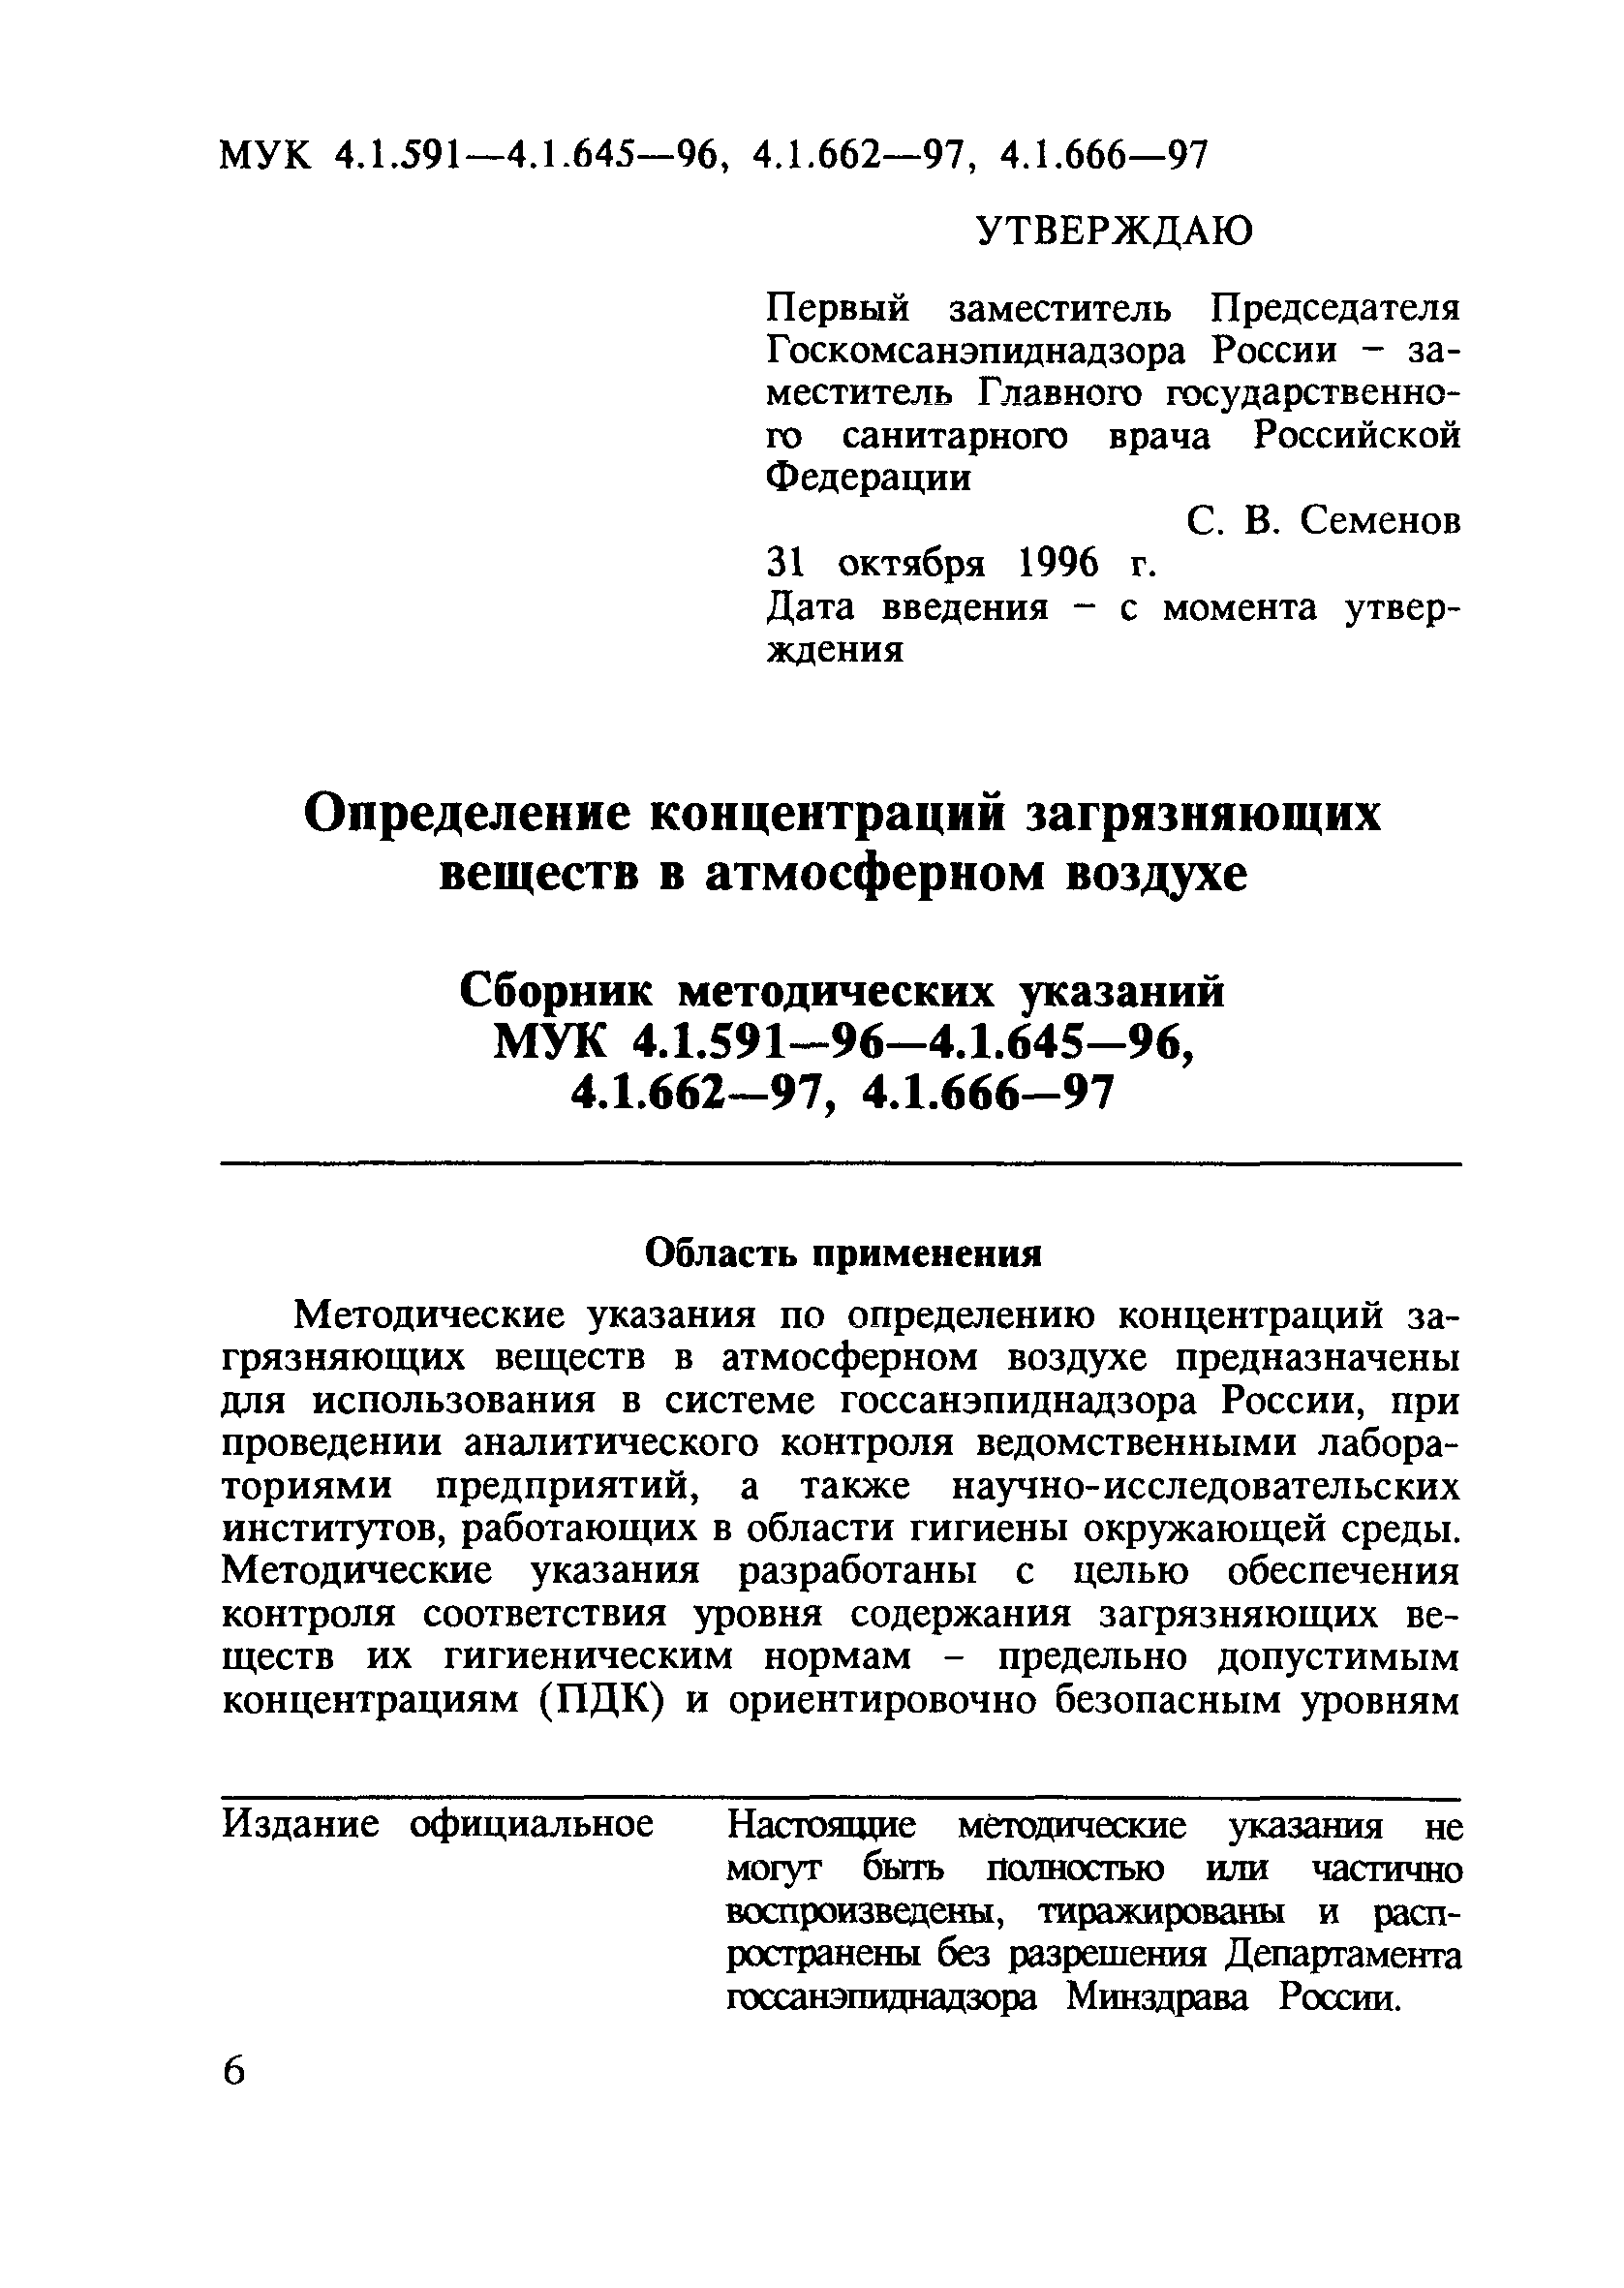 МУК 4.1.631-96